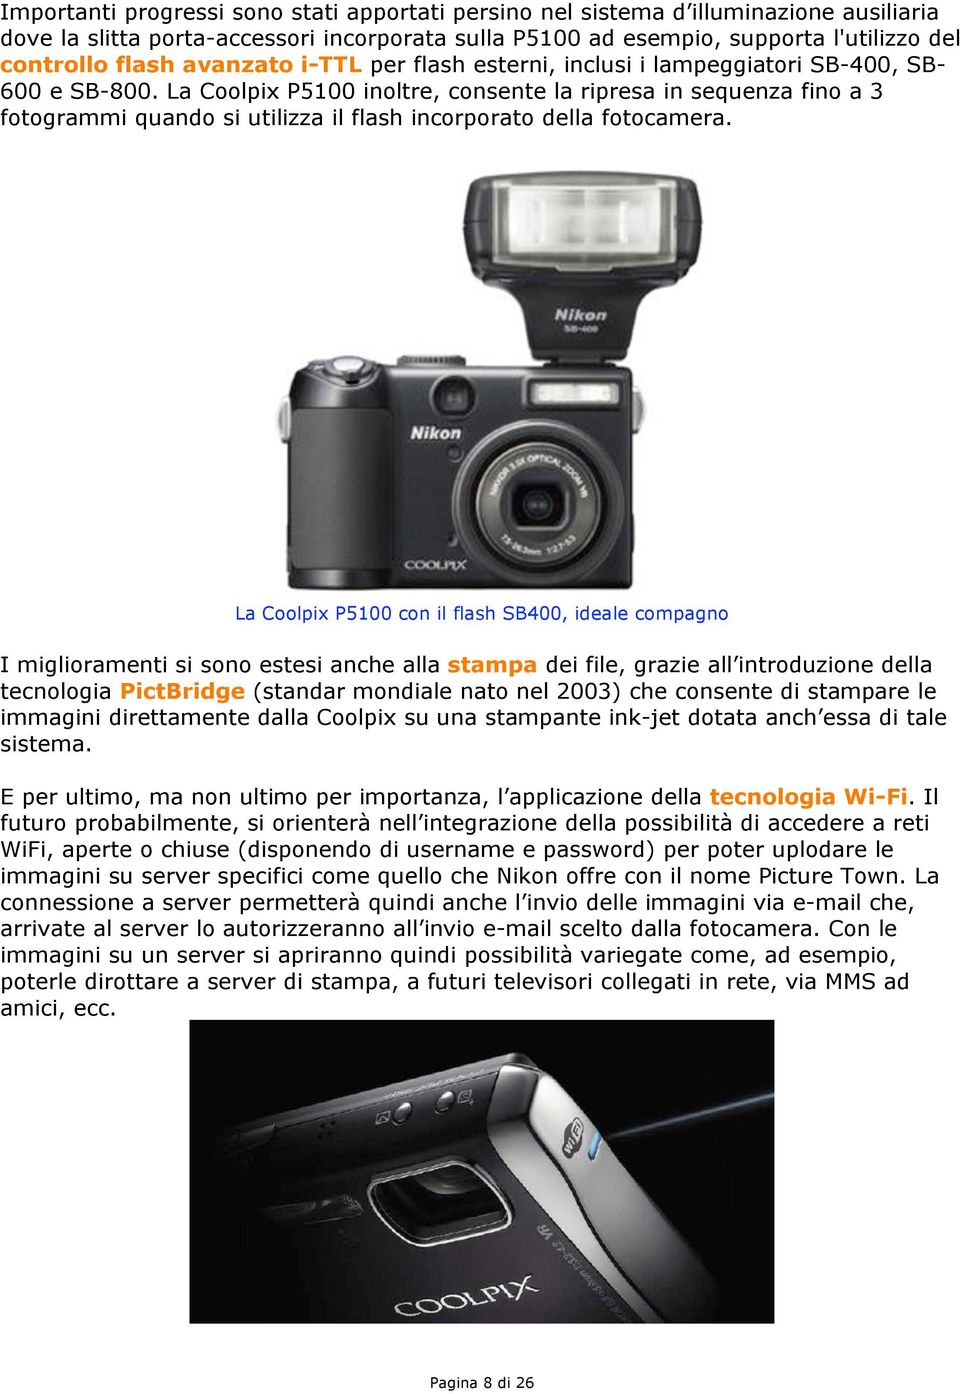 La Coolpix P5100 inoltre, consente la ripresa in sequenza fino a 3 fotogrammi quando si utilizza il flash incorporato della fotocamera.